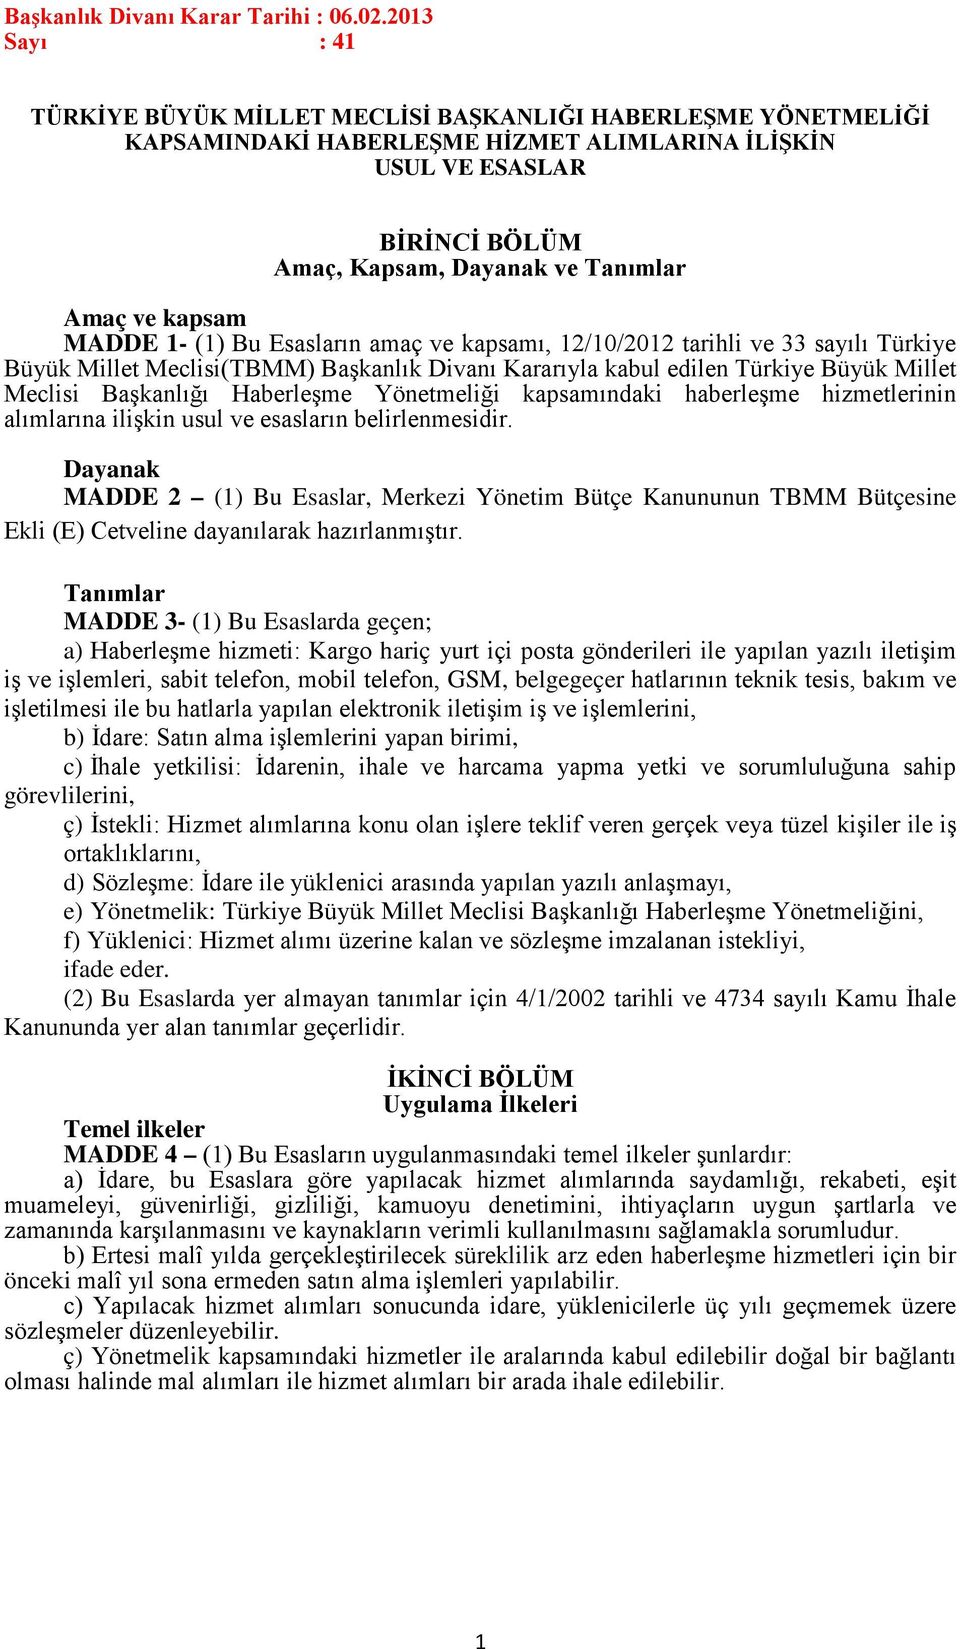 kapsam MADDE 1- (1) Bu Esasların amaç ve kapsamı, 12/10/2012 tarihli ve 33 sayılı Türkiye Büyük Millet Meclisi(TBMM) Başkanlık Divanı Kararıyla kabul edilen Türkiye Büyük Millet Meclisi Başkanlığı